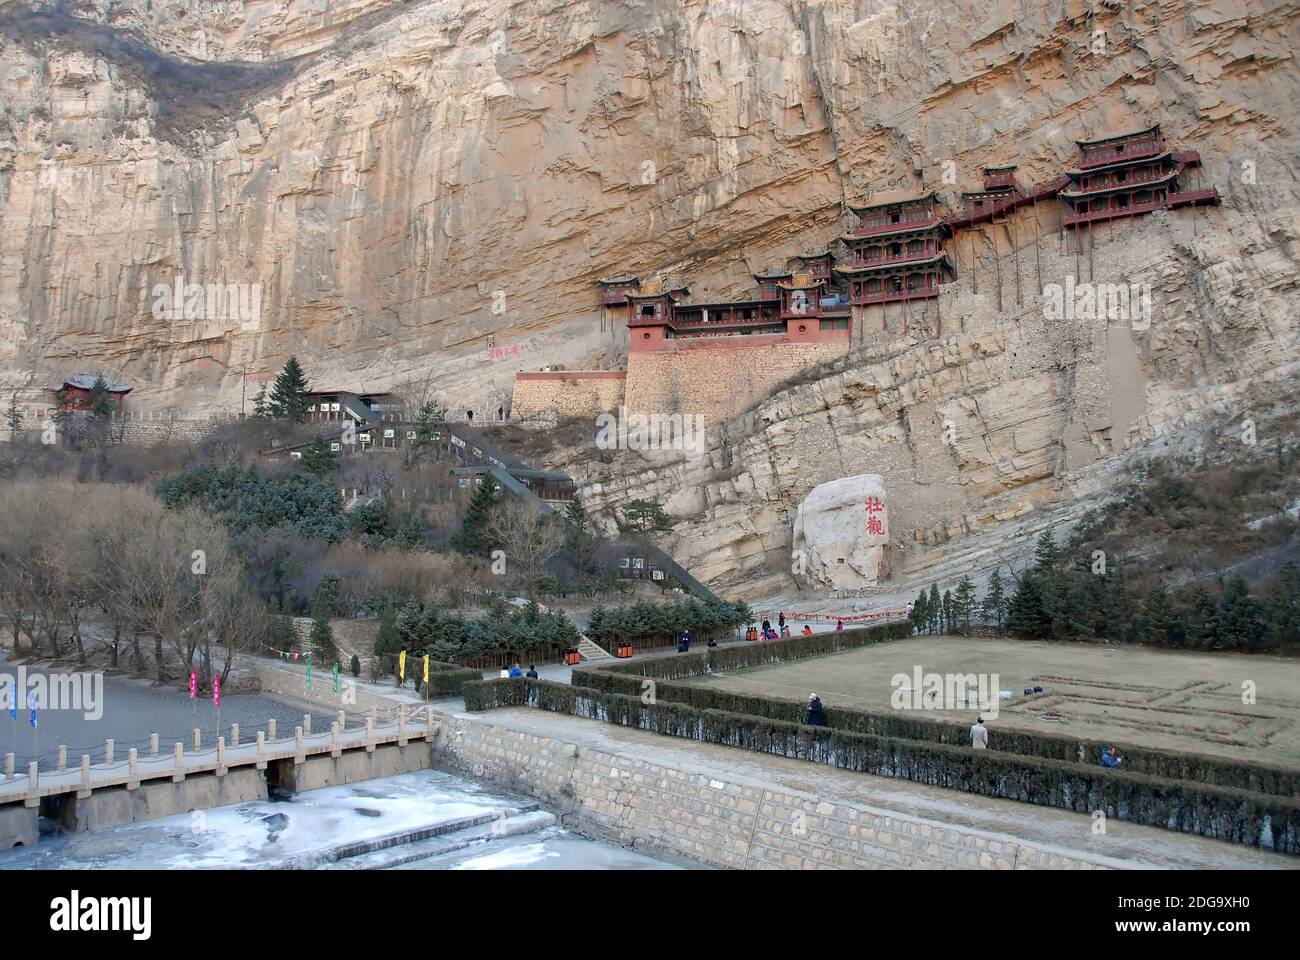 Le Temple suspendu ou Monastère suspendu près de Datong dans la province du Shanxi, en Chine. Rivière gelée au premier plan. Banque D'Images